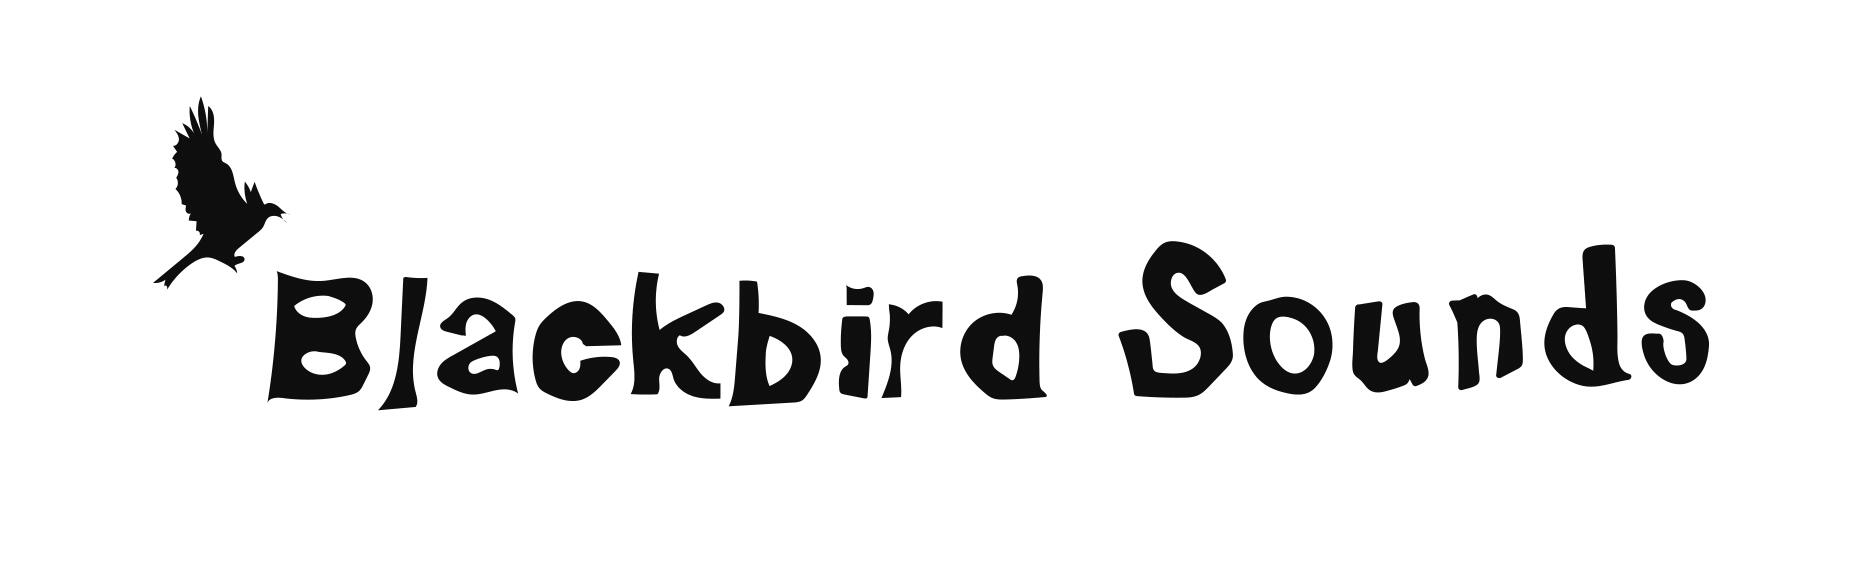 2. Blackbird Sounds Logo.jpg